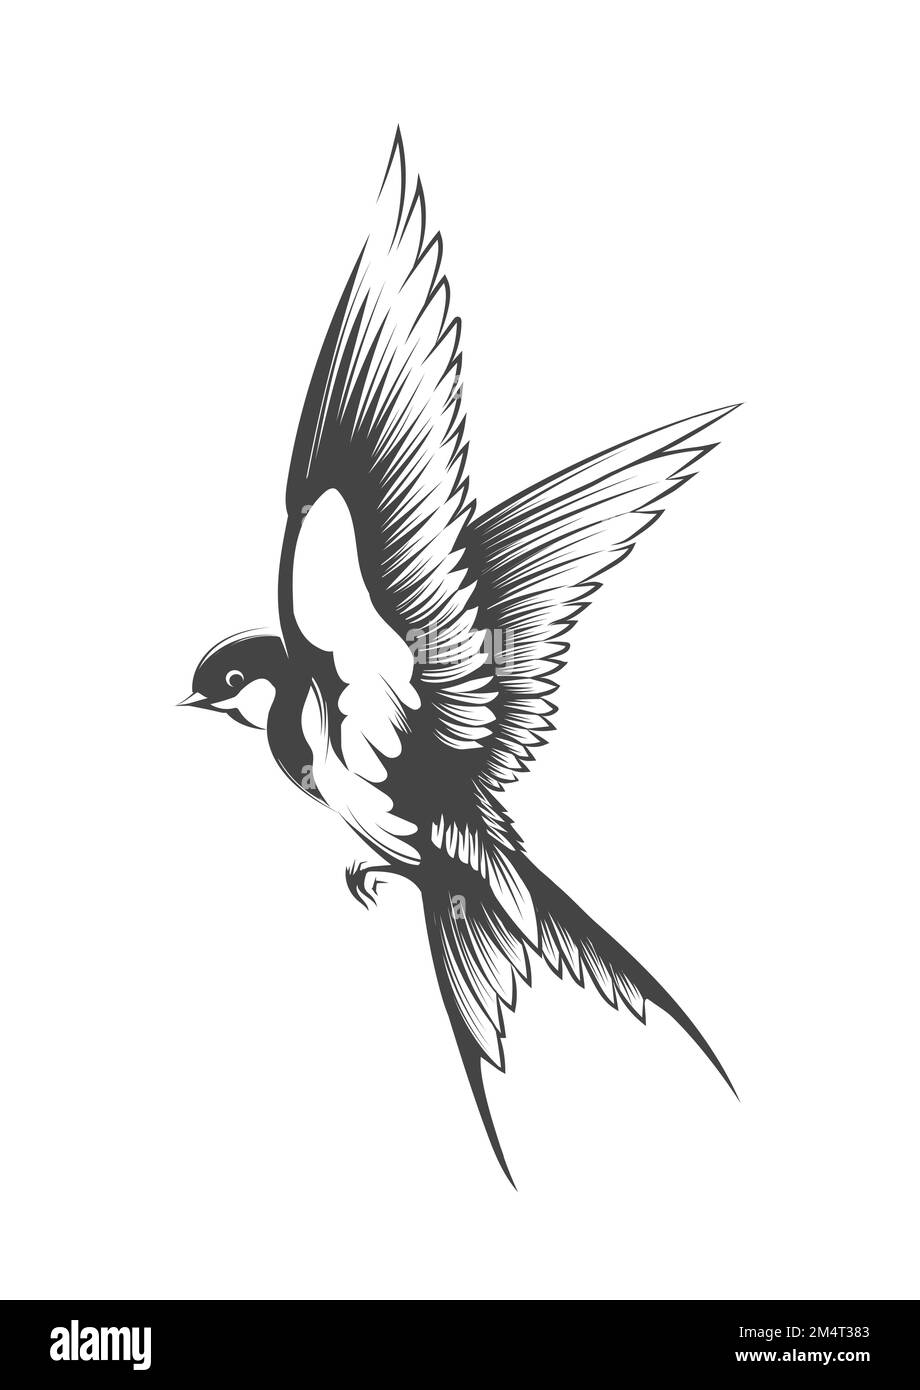 Tatouage d'oiseau de wallow volant isolé sur fond blanc. Illustration vectorielle. Illustration de Vecteur